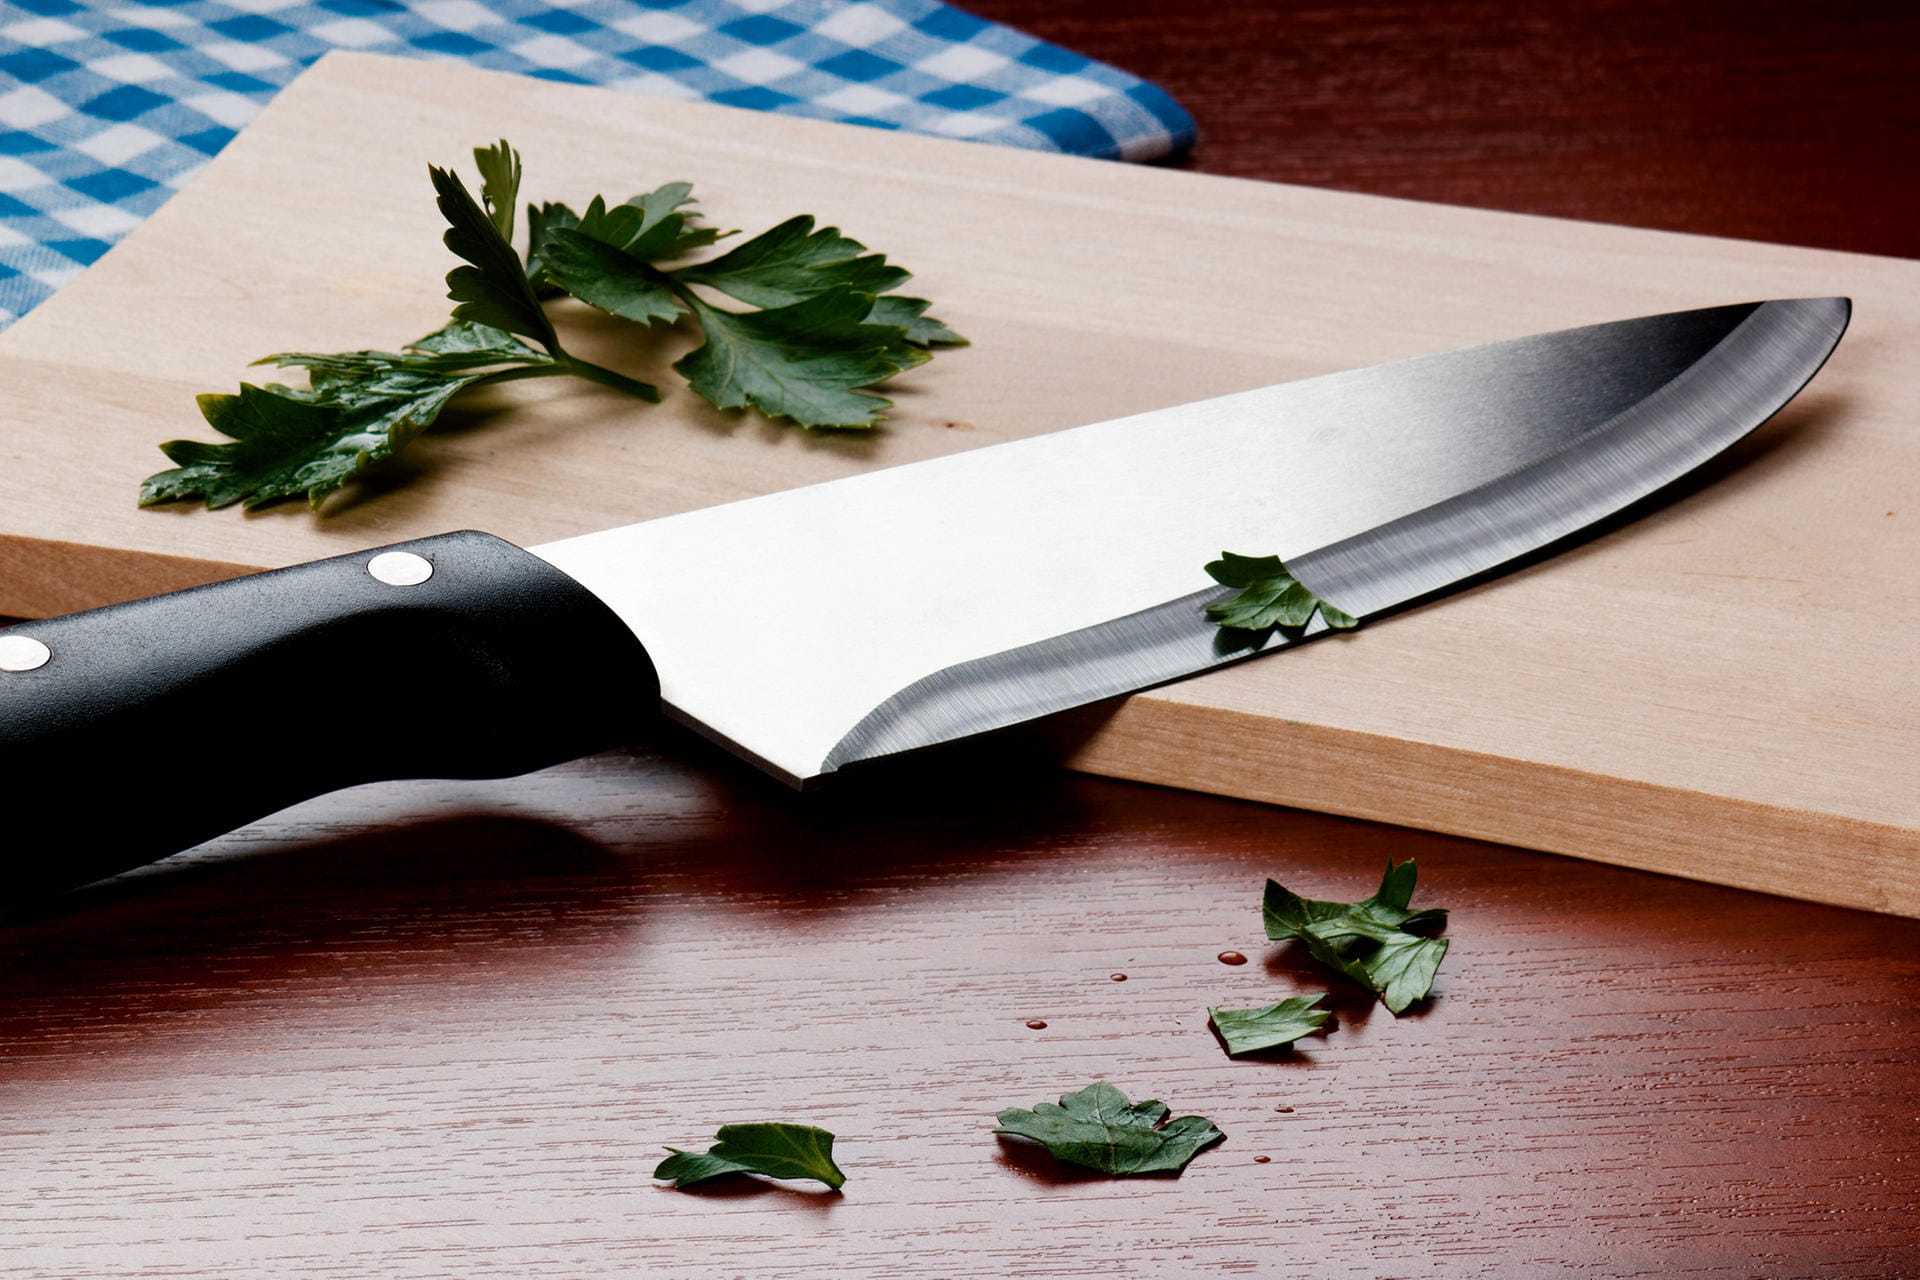 Messer: Auch, wenn der Beschenkte gern kocht, sollten Sie ihm keine Messer schenken – das könnte das Band der Freundschaft zerschneiden.